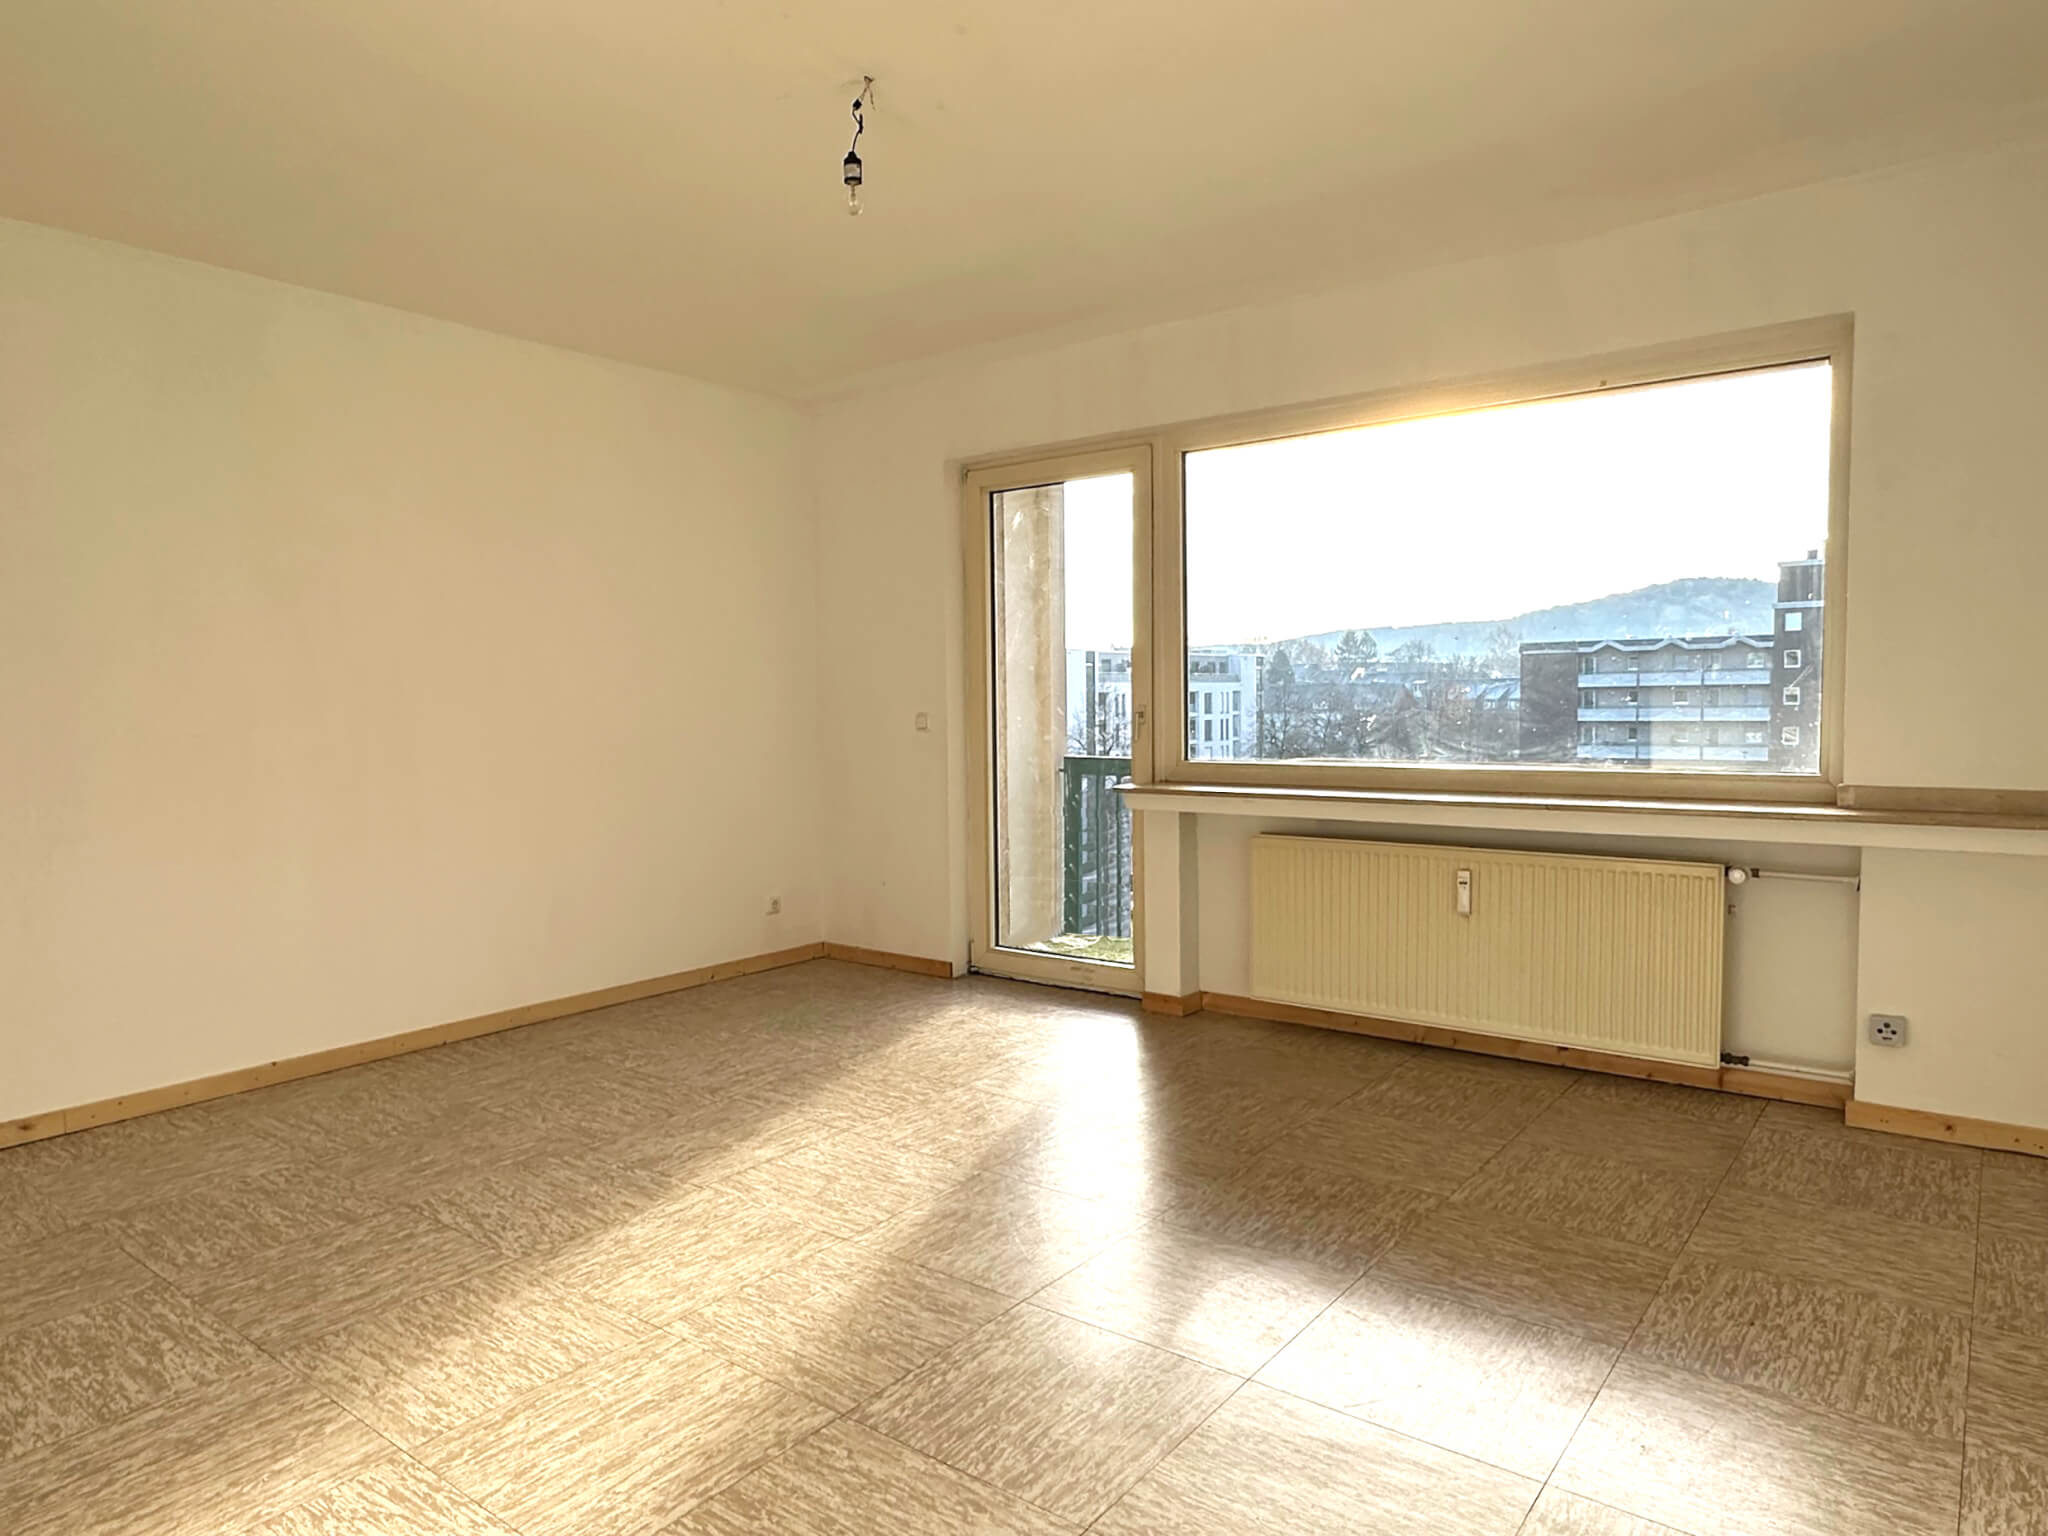 Wohnzimmer Eigentumswohnung in Aachen Vaalser Quartier Immobilienmakler Koch zu verkaufen